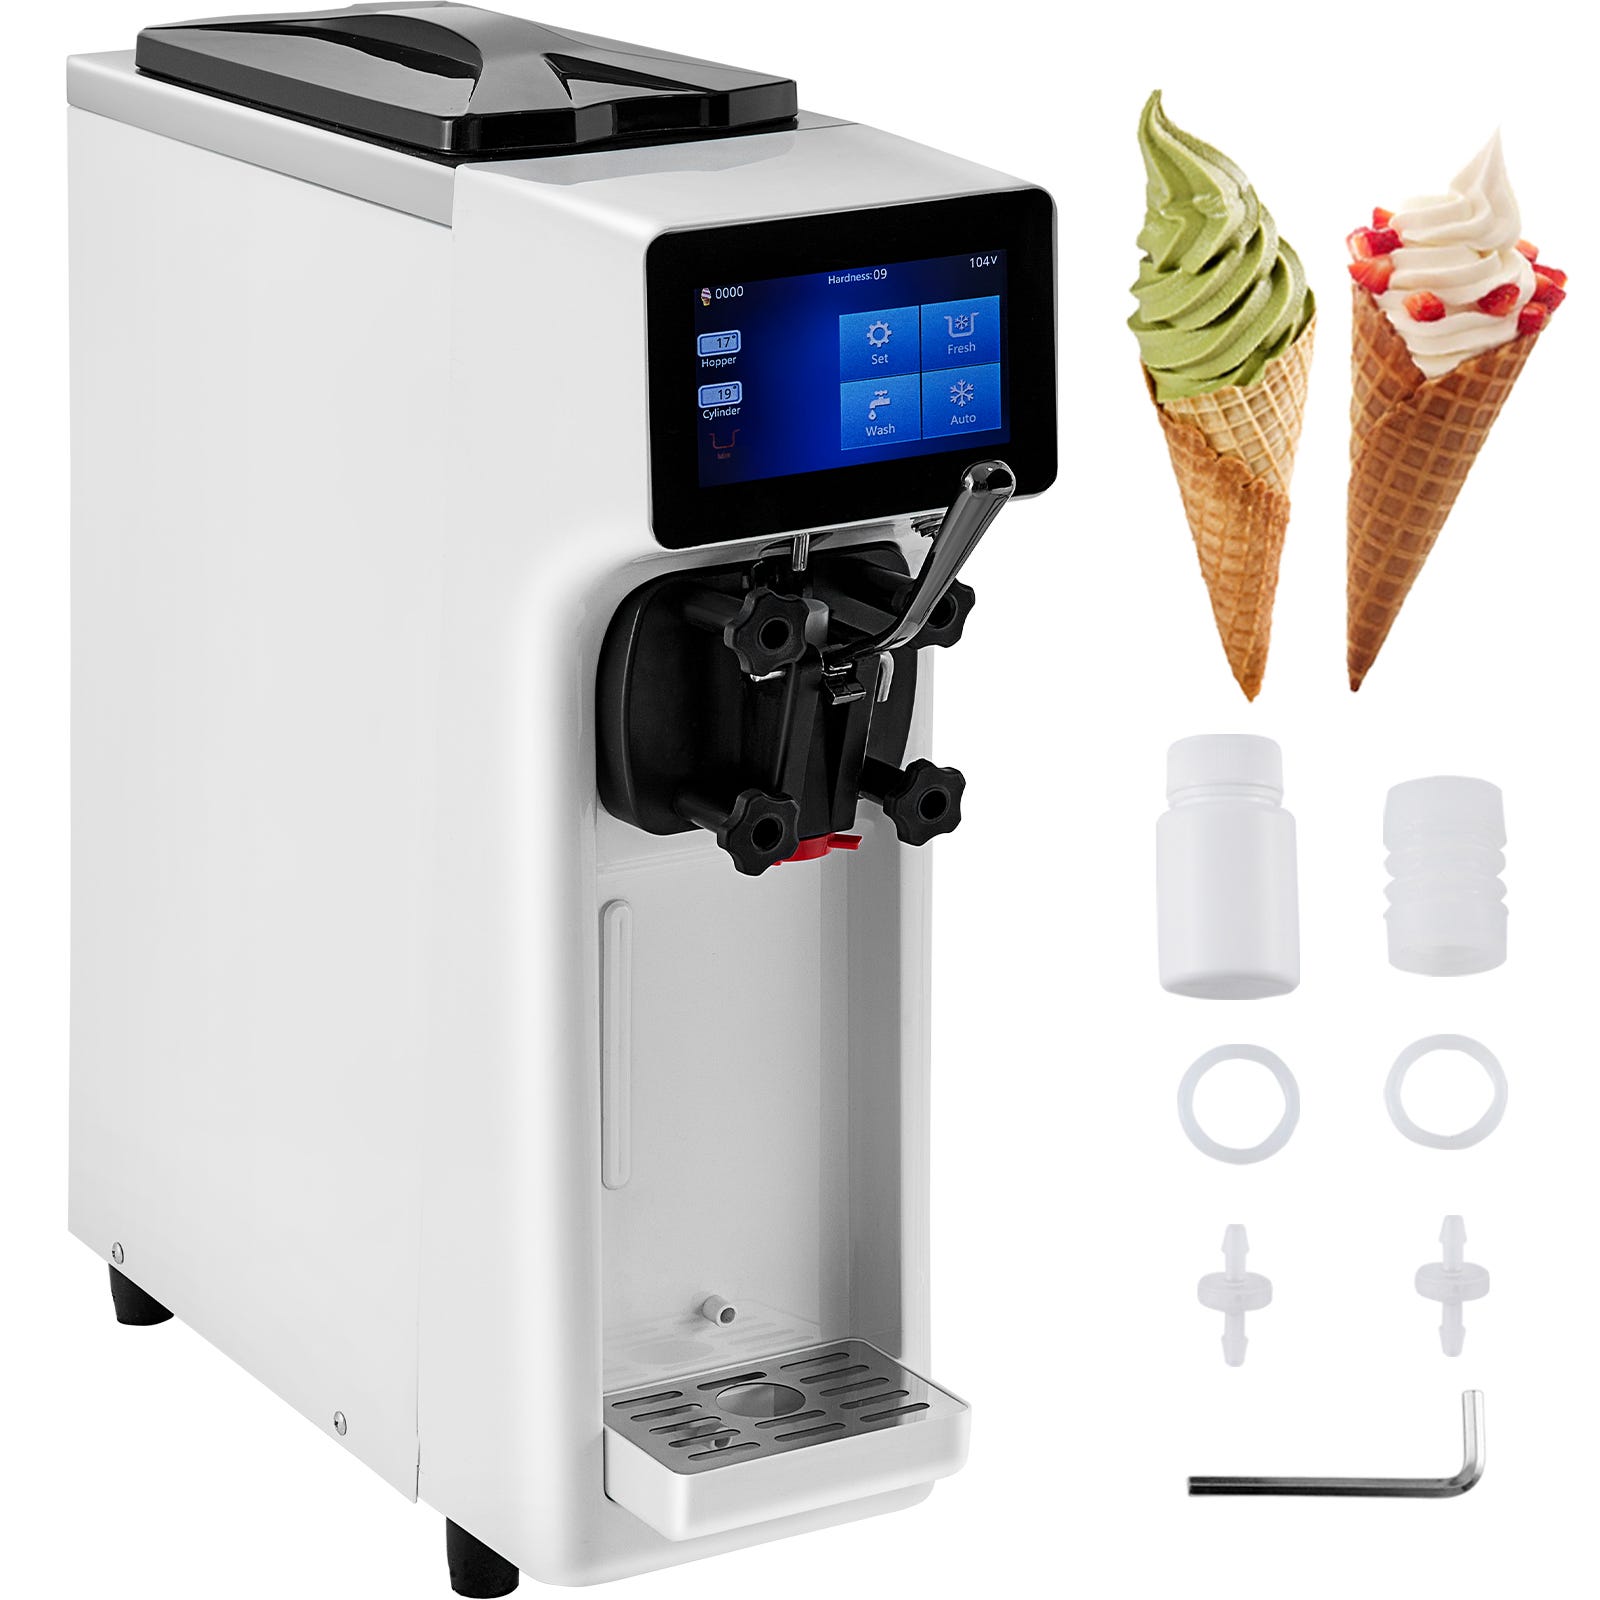 VEVOR Machine à crème glacée Verticale Professionnel Sorbetière à Glace  Commerciale Machine à crème glacée pour restaurants Cafés Fast-foods